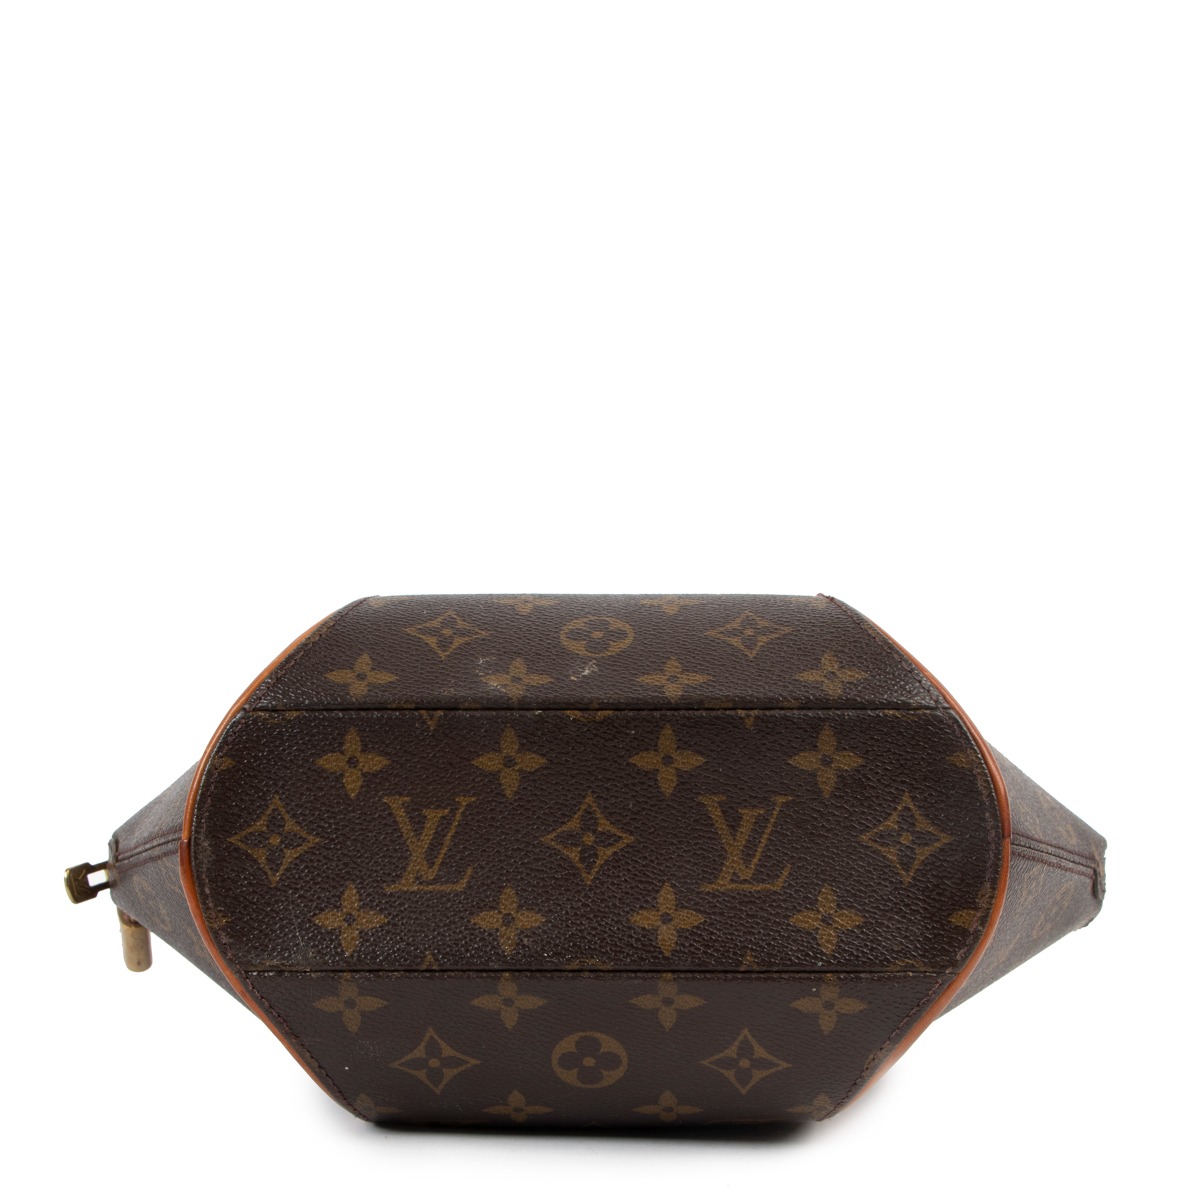 Louis Vuitton Ellipse Handbag 397843, UhfmrShops